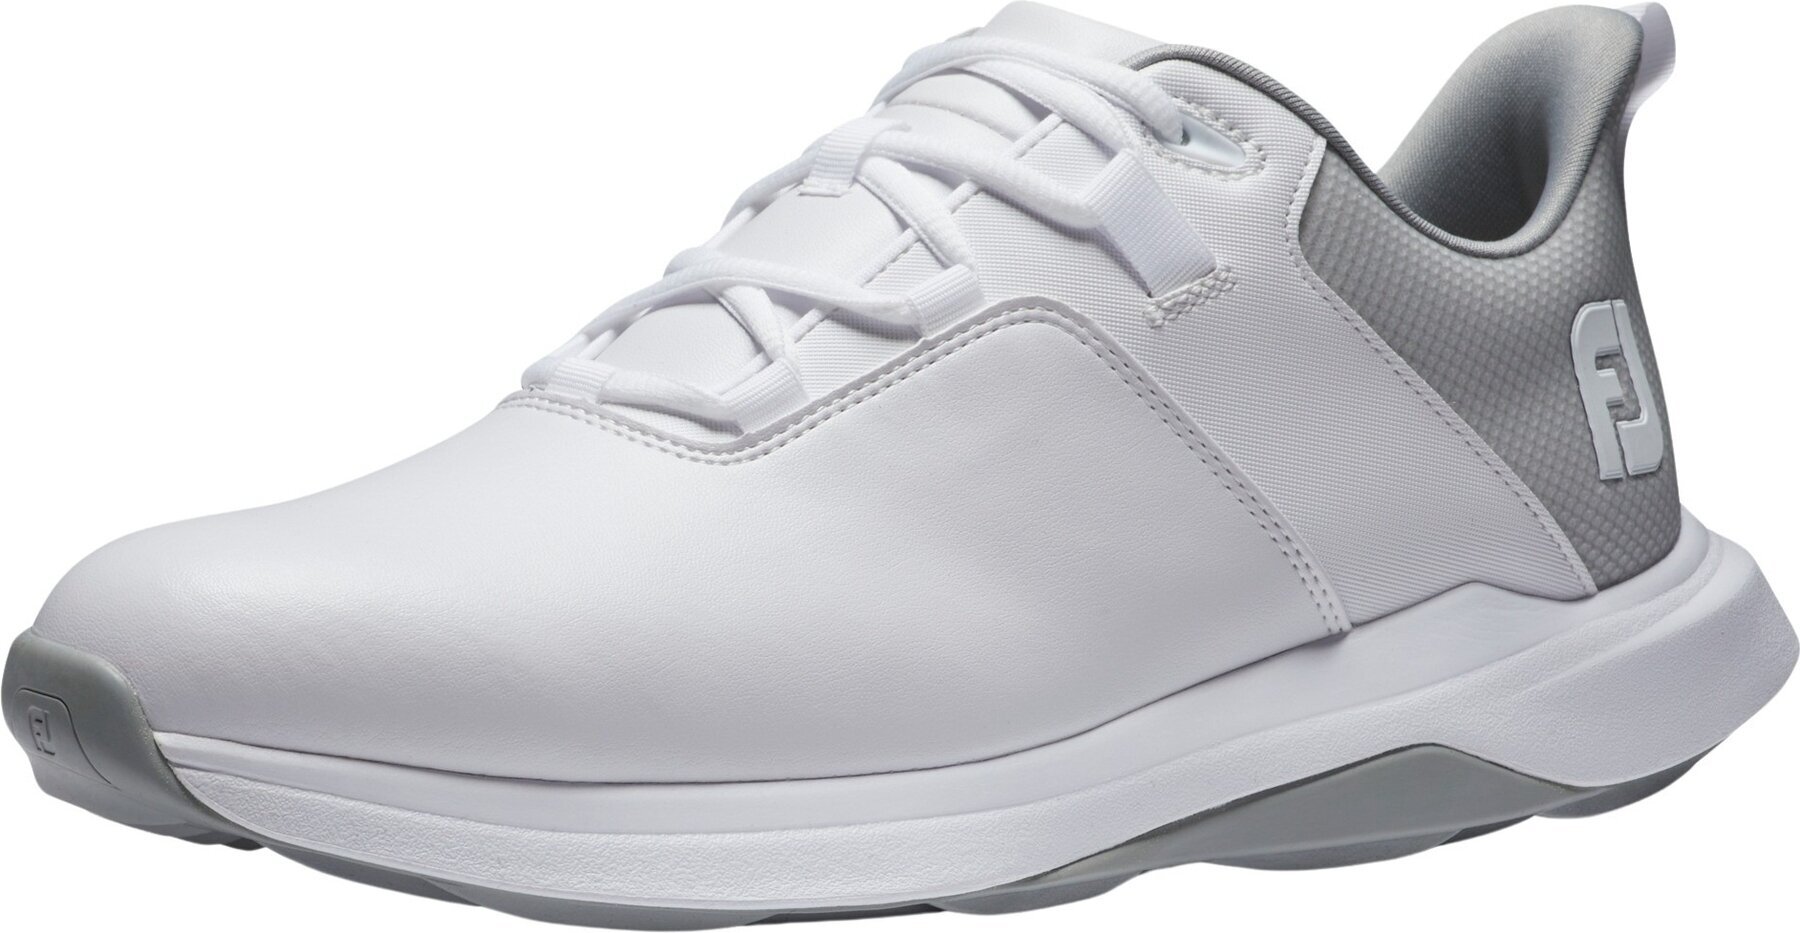 Calçado de golfe para homem Footjoy ProLite Mens Golf Shoes White/Grey 44